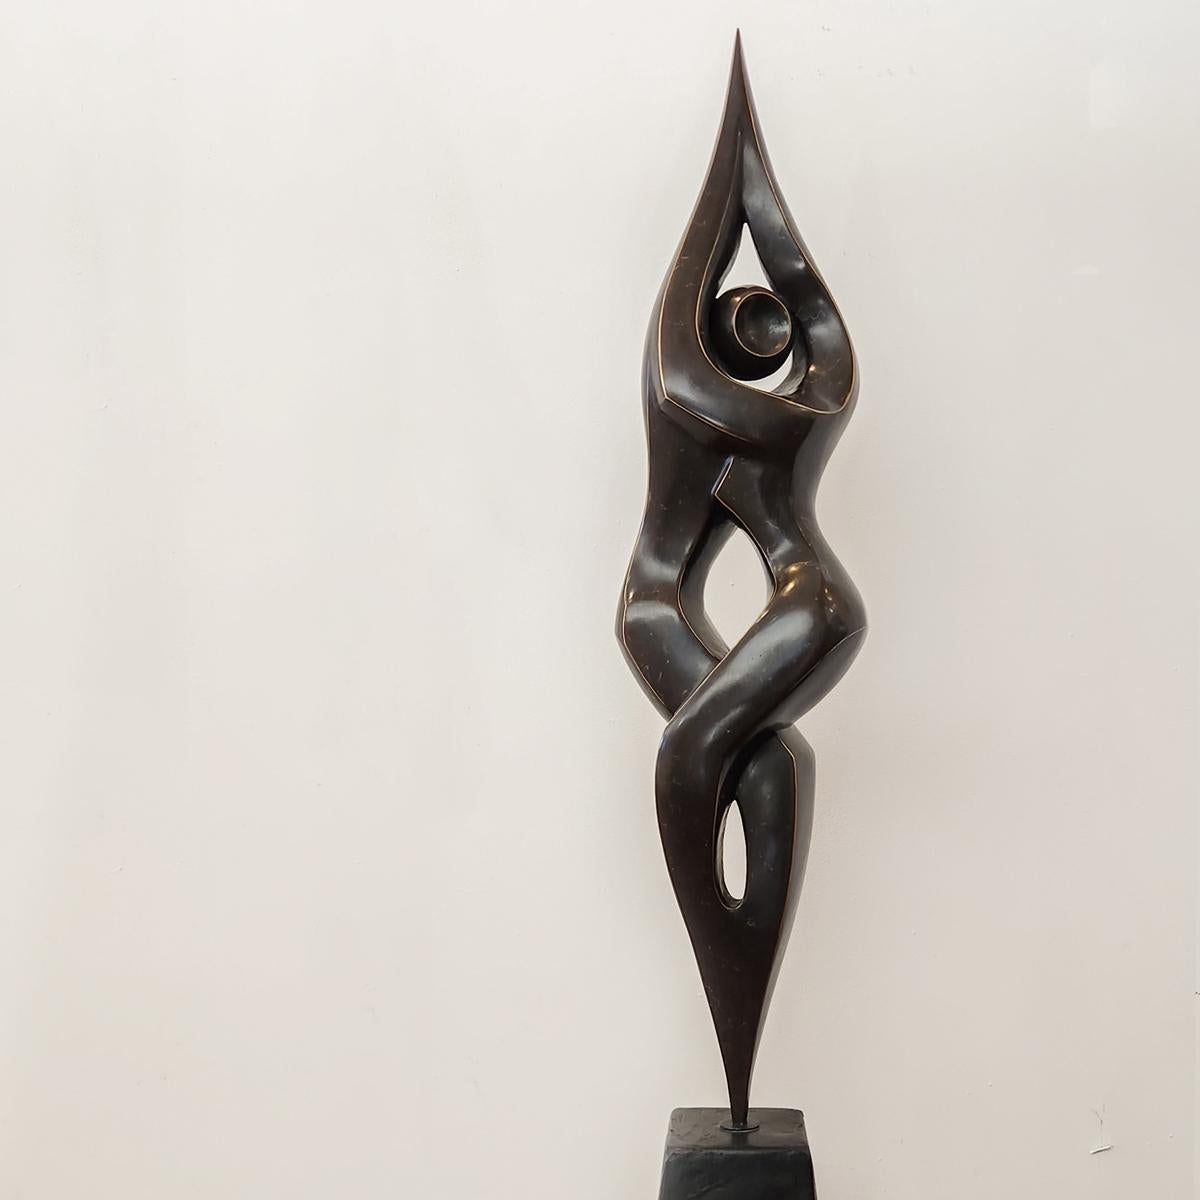 Michael Vaynman Figurative Sculpture – Entwined, Zeitgenössische Bronzeskulptur, Ausgabe 1 von 10